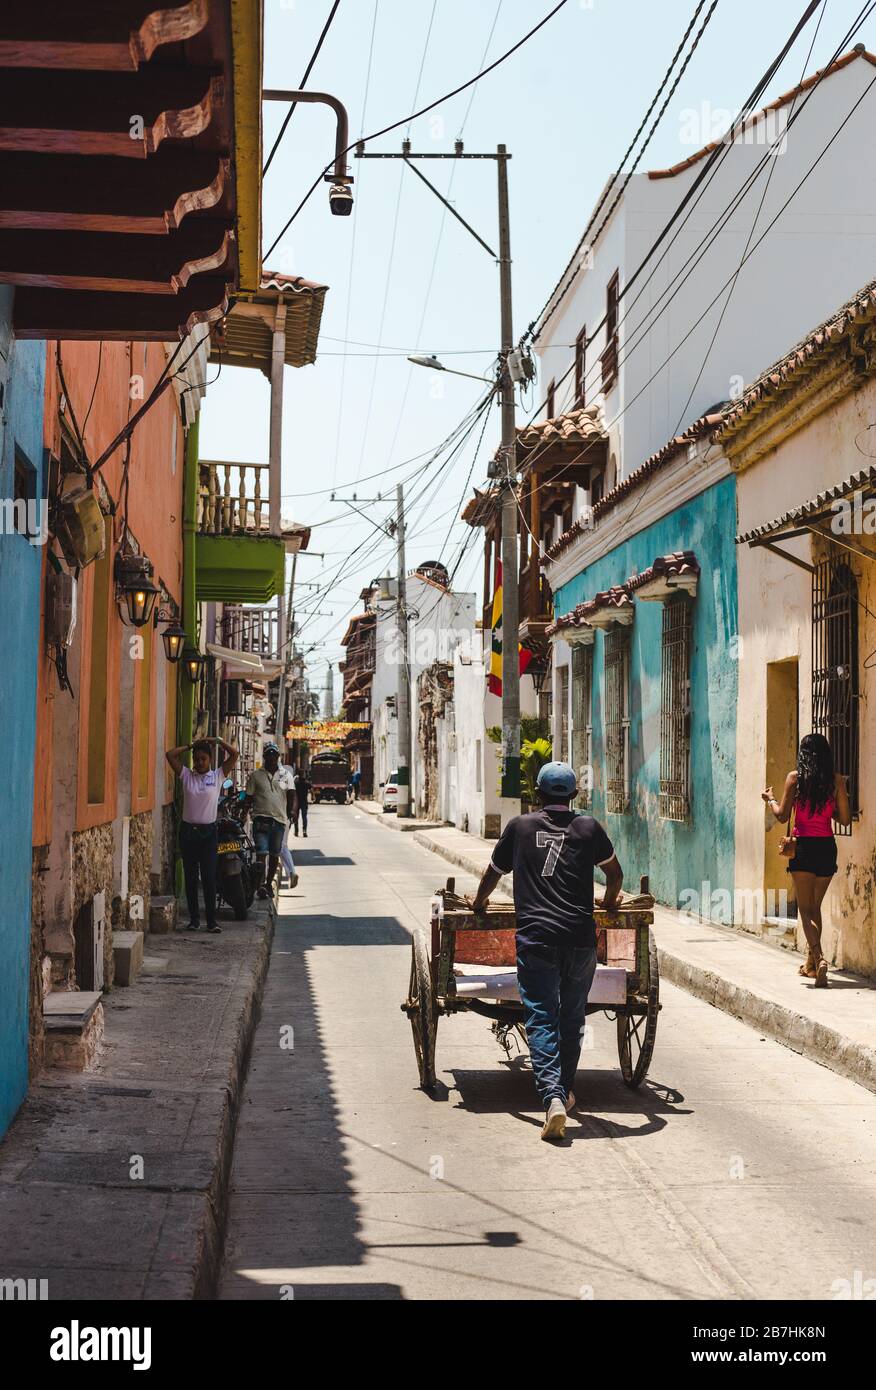 Hombre trabajador empujando carro de madera de productos por una calle estrecha y colorida en el centro de Getsemani, Cartagena Foto de stock